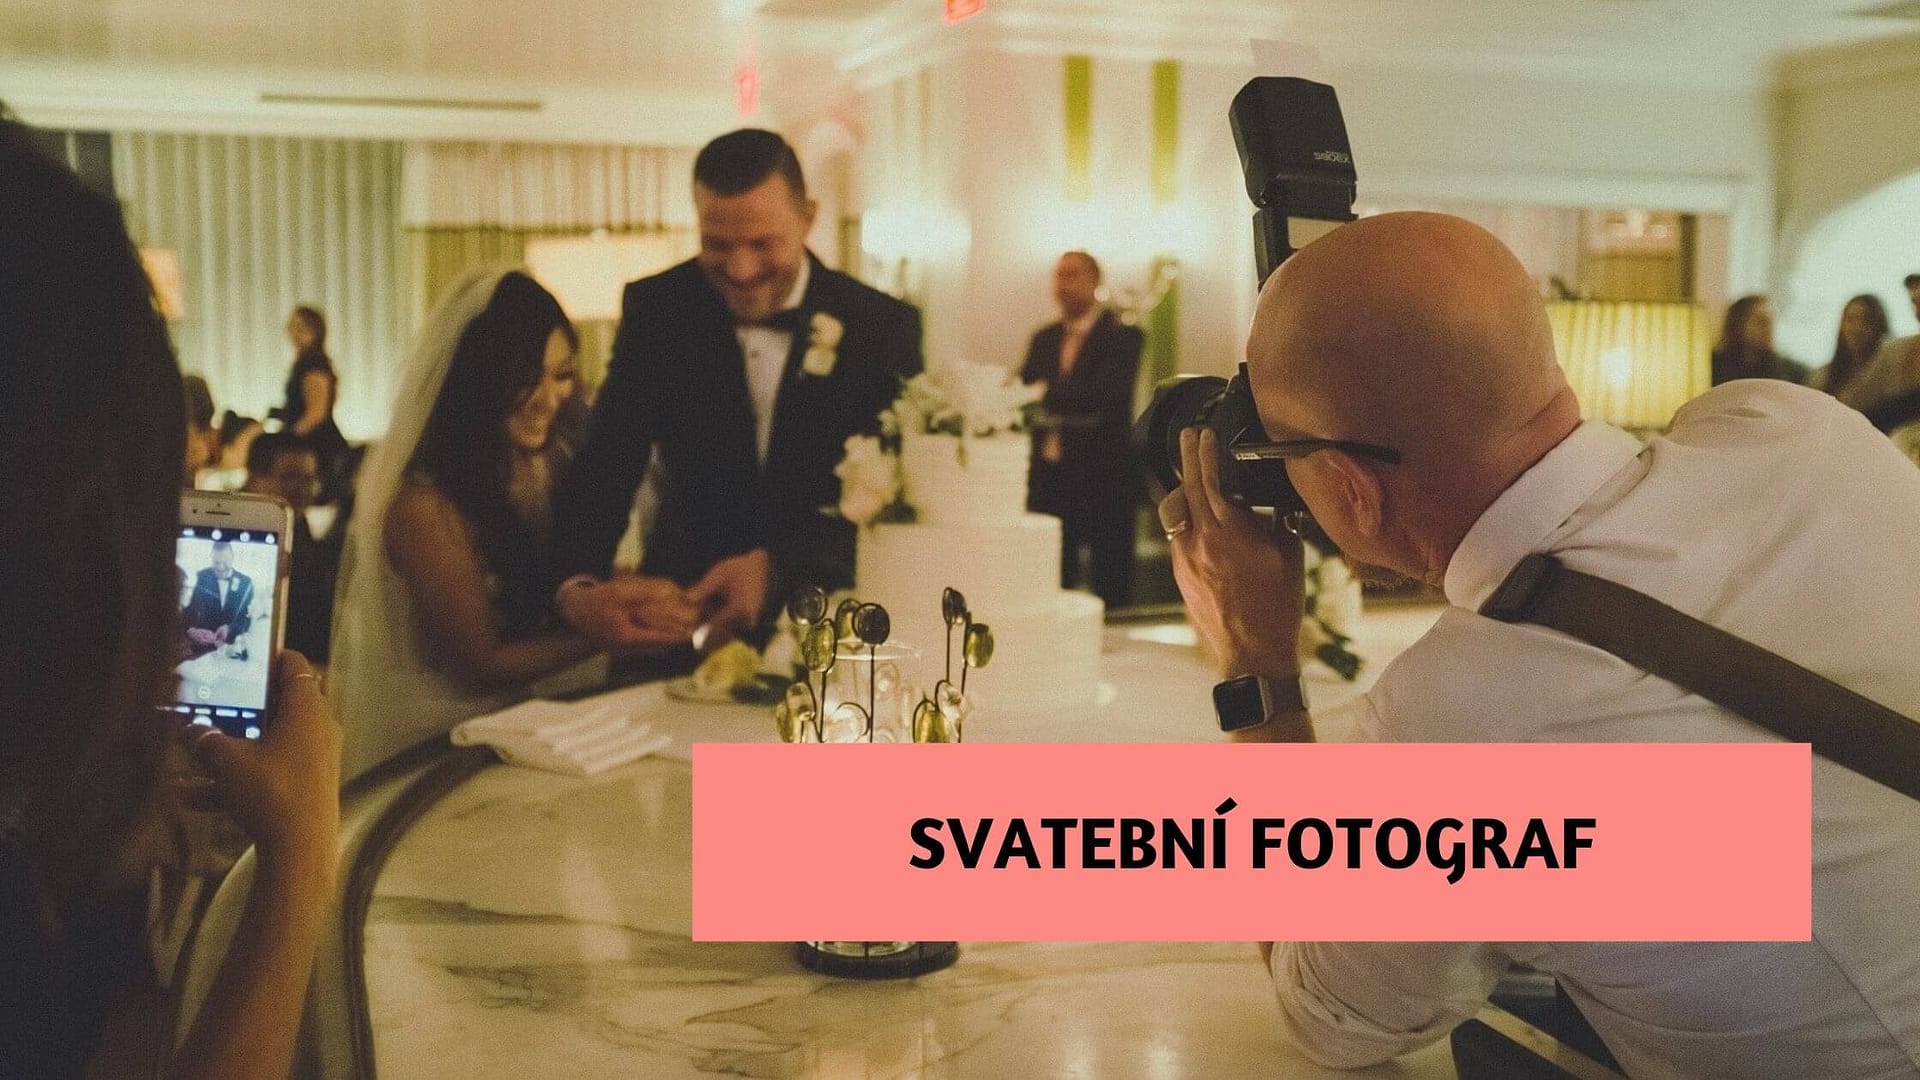 Výběr svatebního fotografa – nepodceňte tuto část příprav